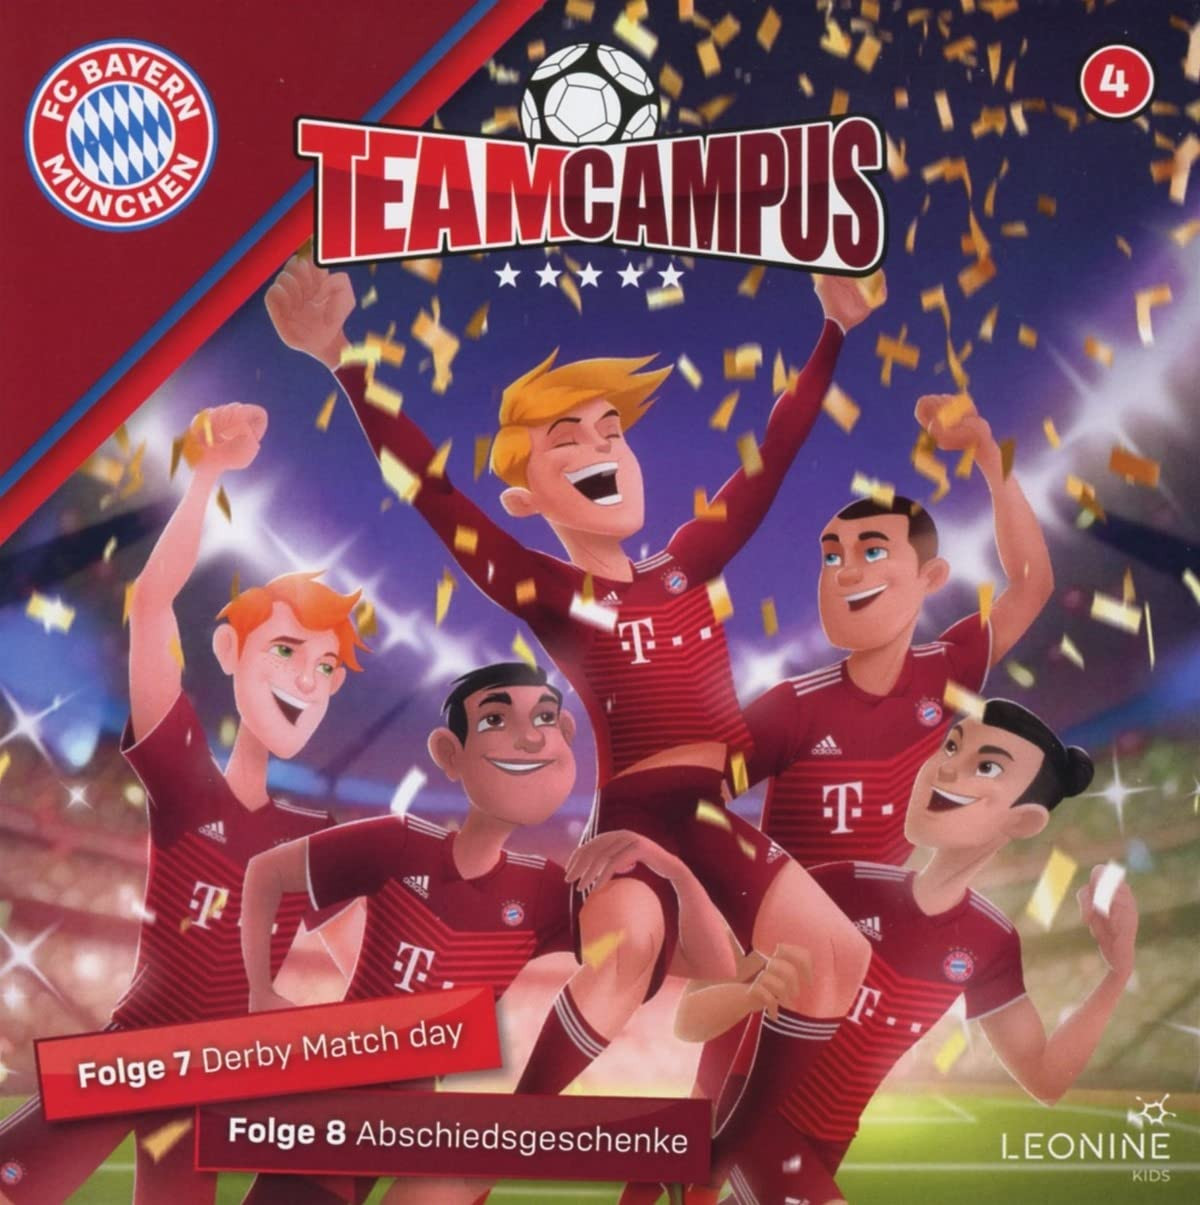 FC Bayern Team Campus 04 - Derby Match Day / Abschiedsgeschenke